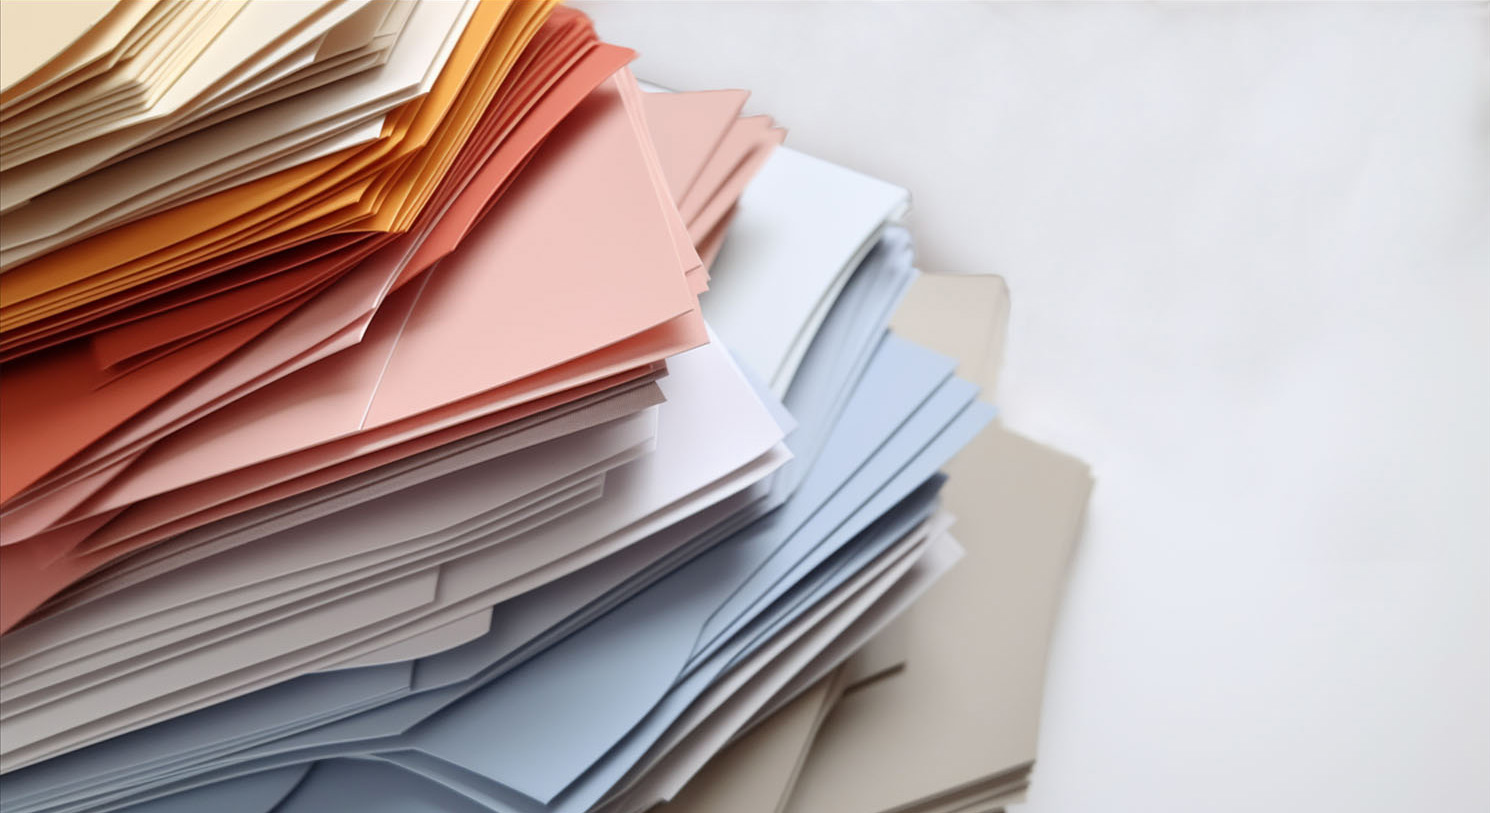 Löschpapier in verschiedenen Farben und Größen